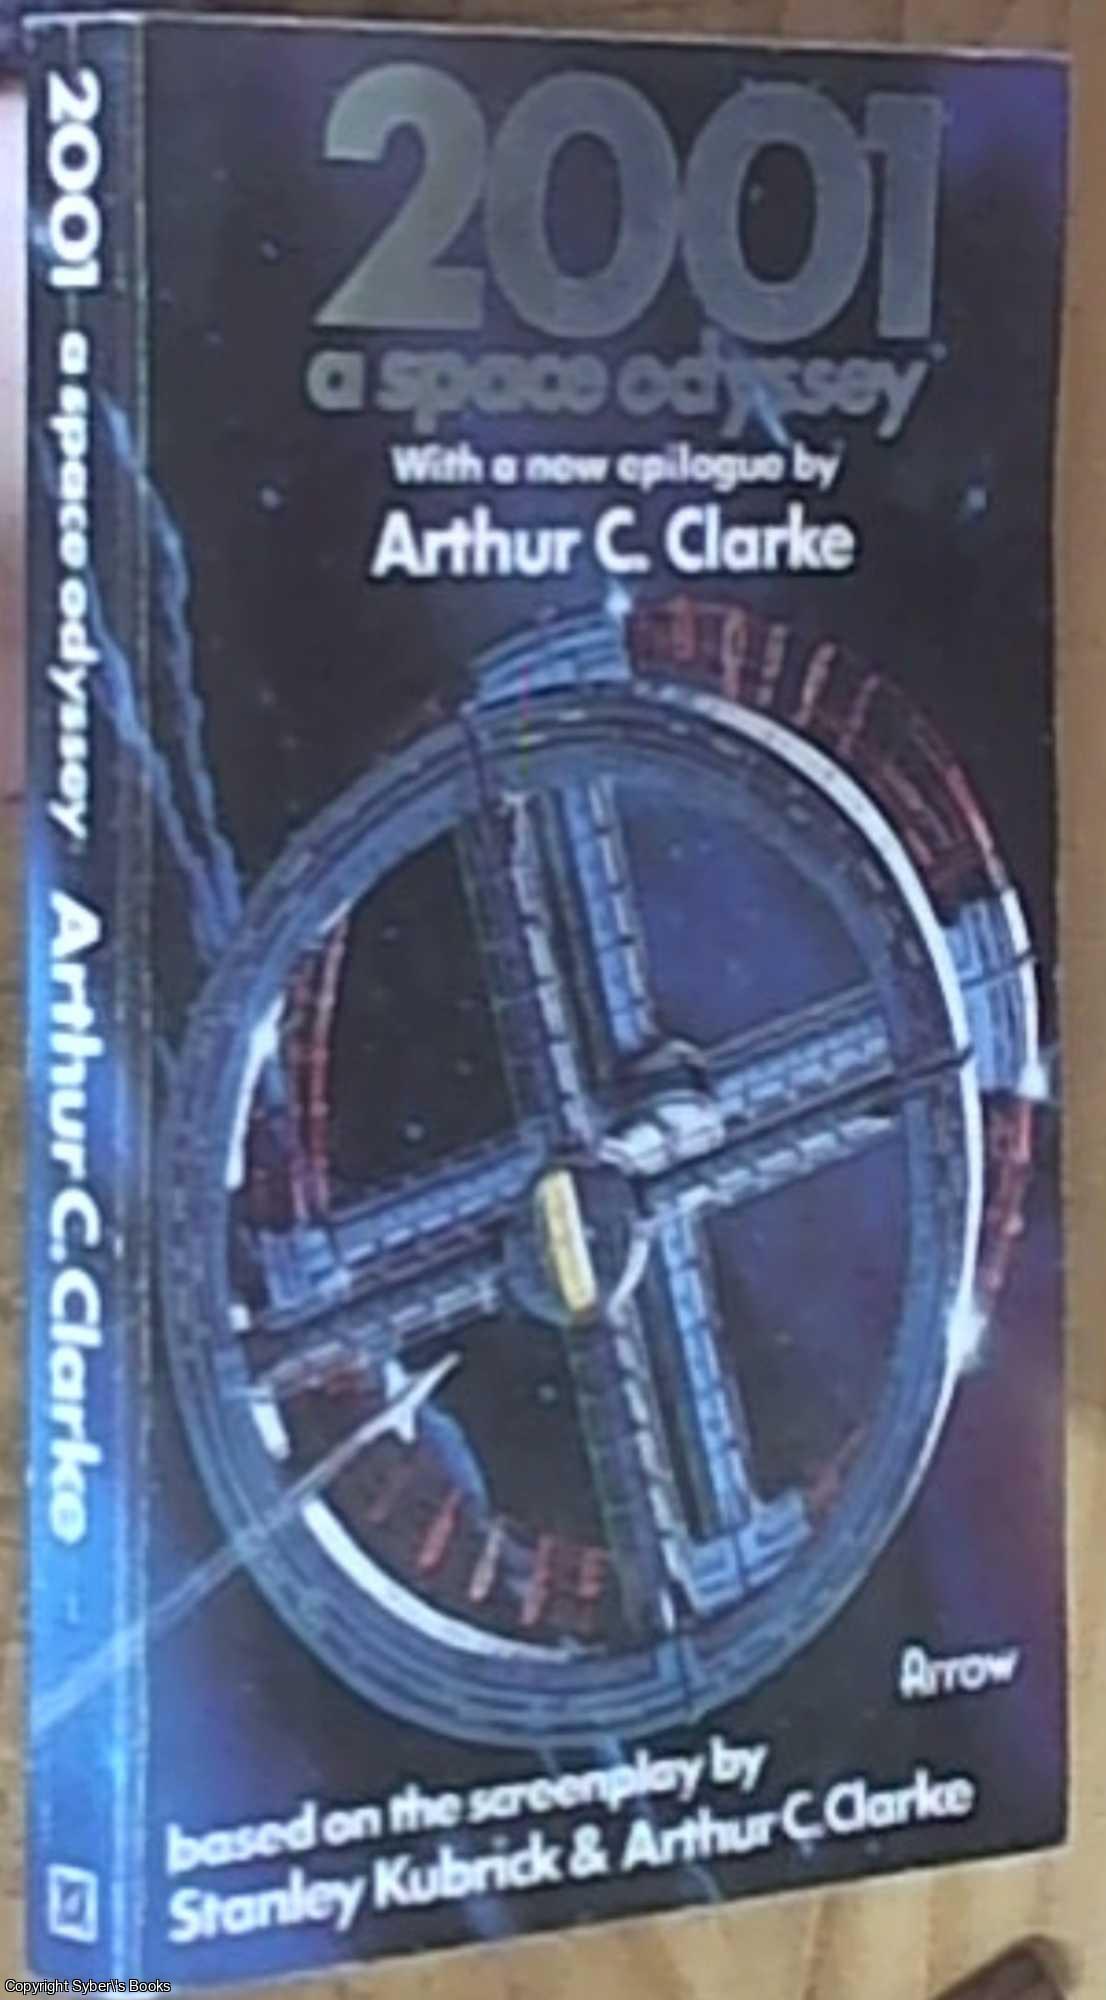 Clarke, Arthur C. - 2001 A Space Odyssey